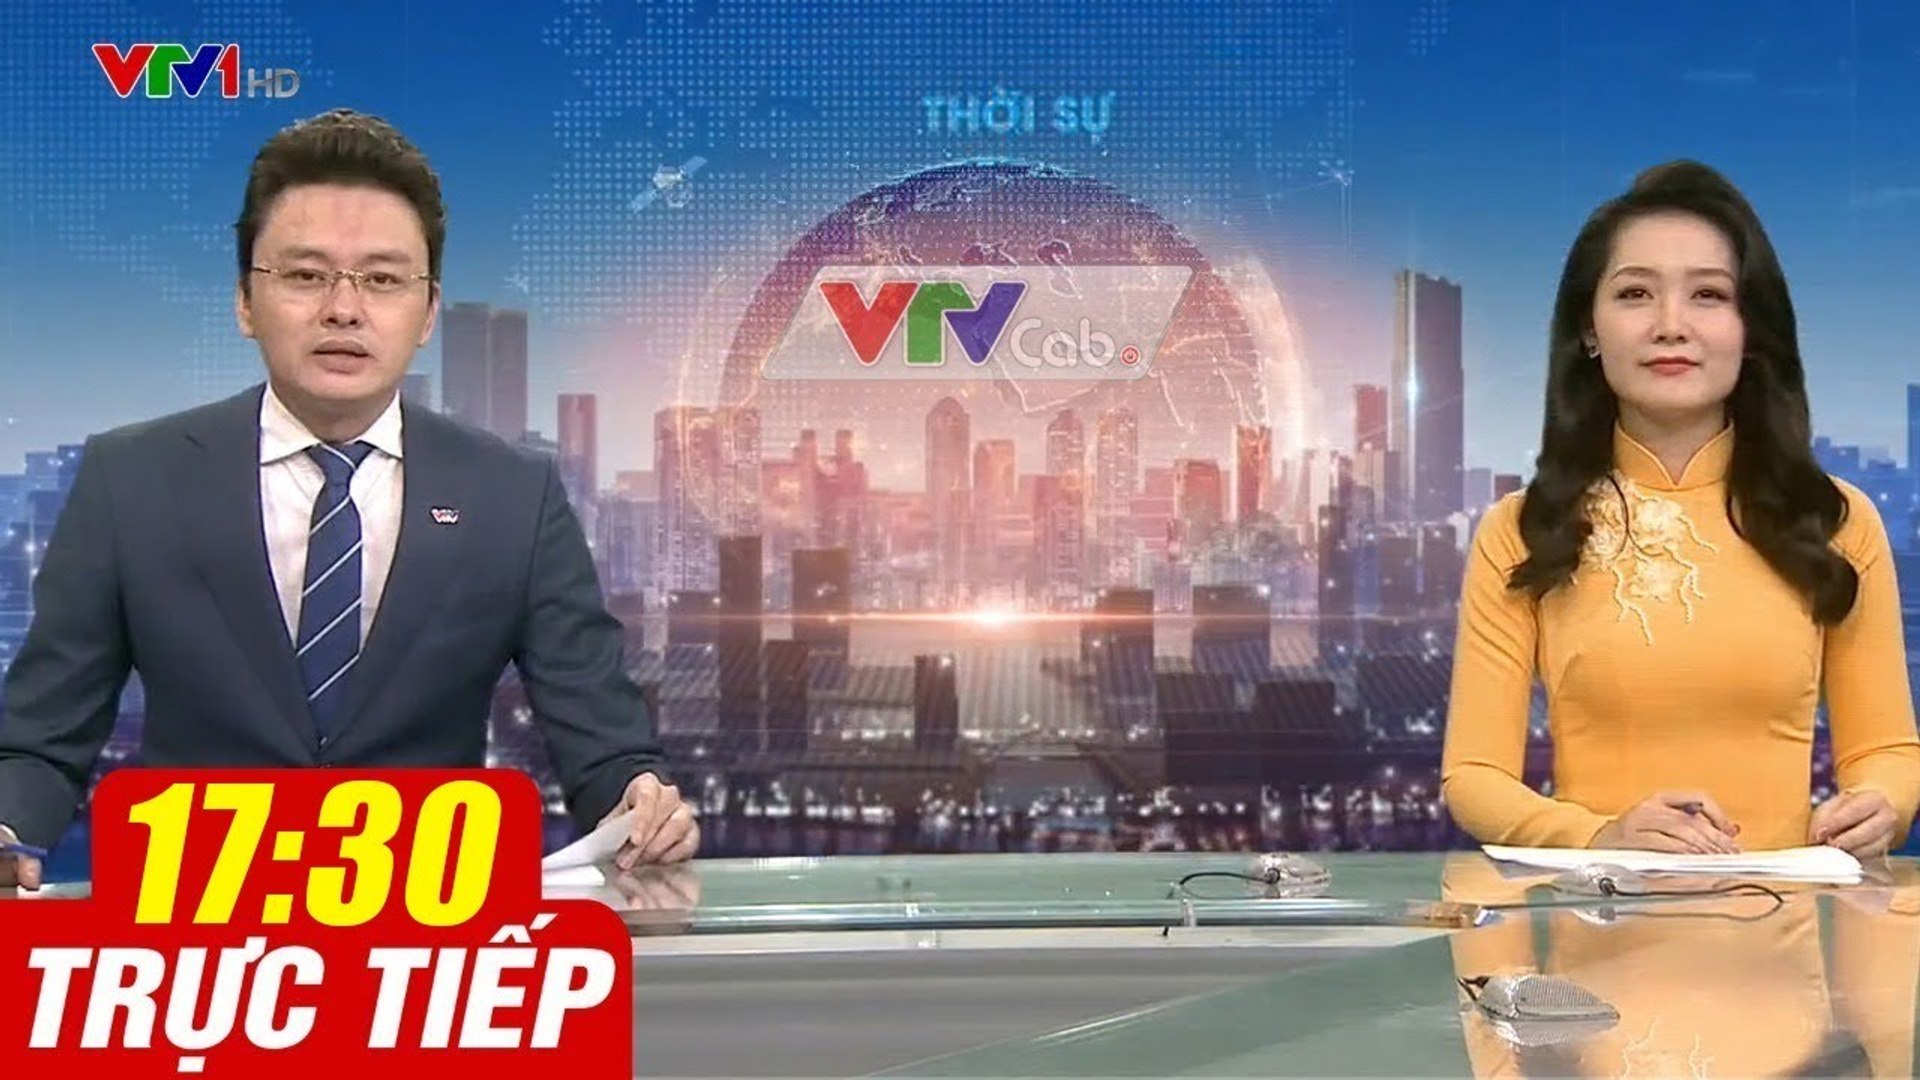 Trực Tiếp VIỆT NAM HÔM NAY 17h30 ngày 8.10.2020  Tin tức thời sự VTV1 mới nhất hôm nay